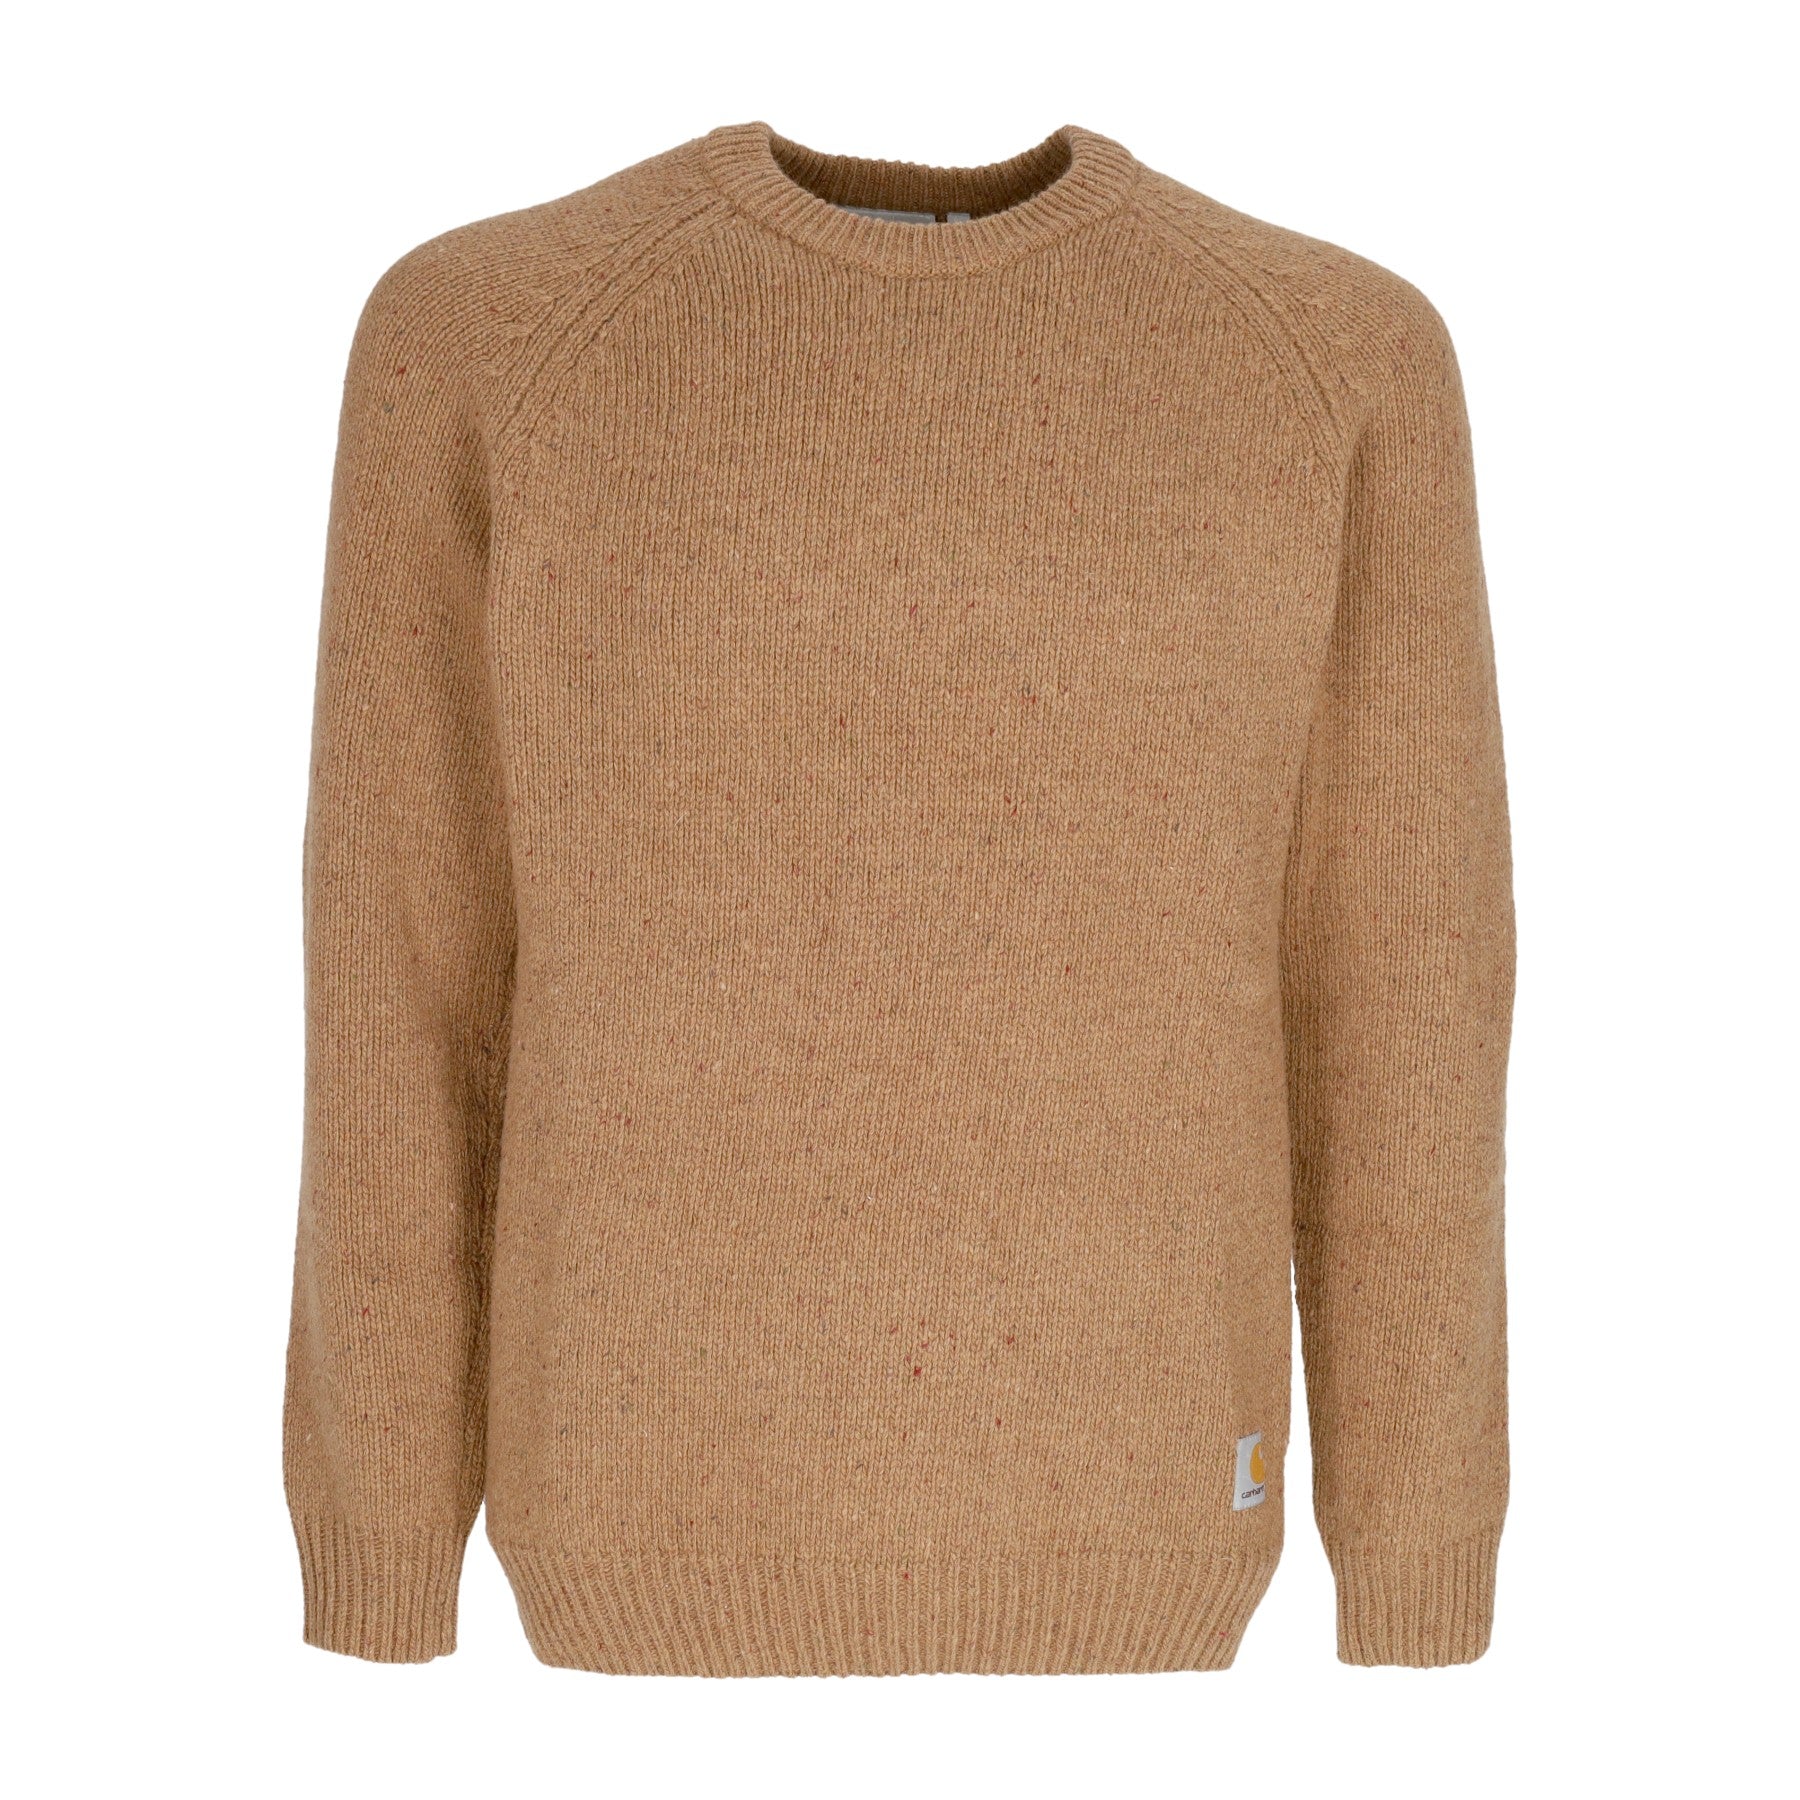 Maglione Uomo Anglistic Sweater Speckled Jasper I010977